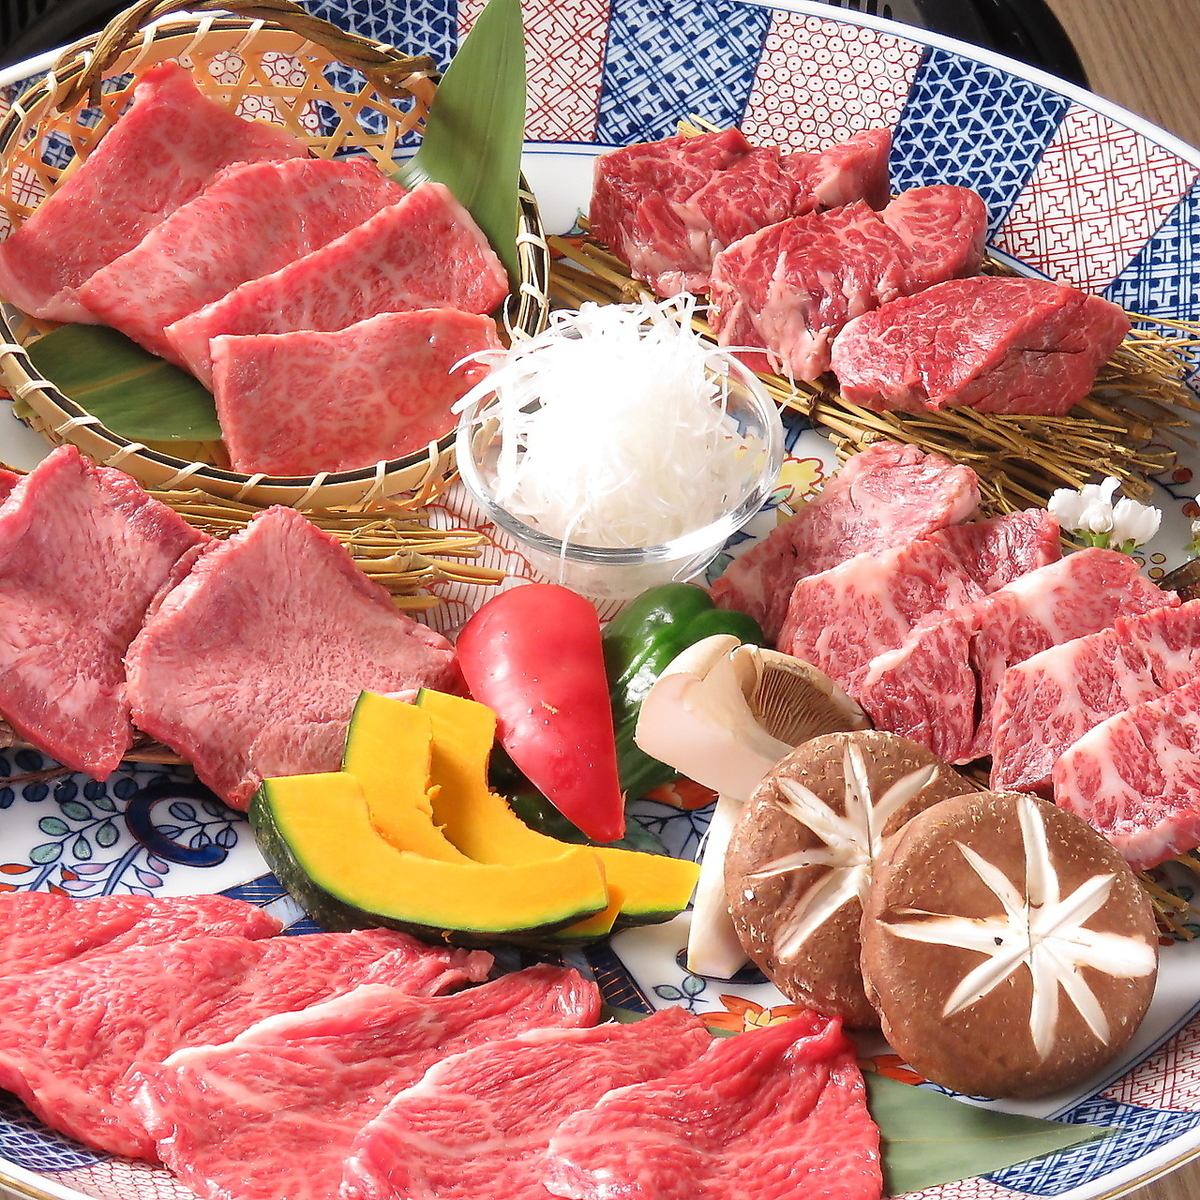 Please enjoy Yamasho's carefully selected meat ♪